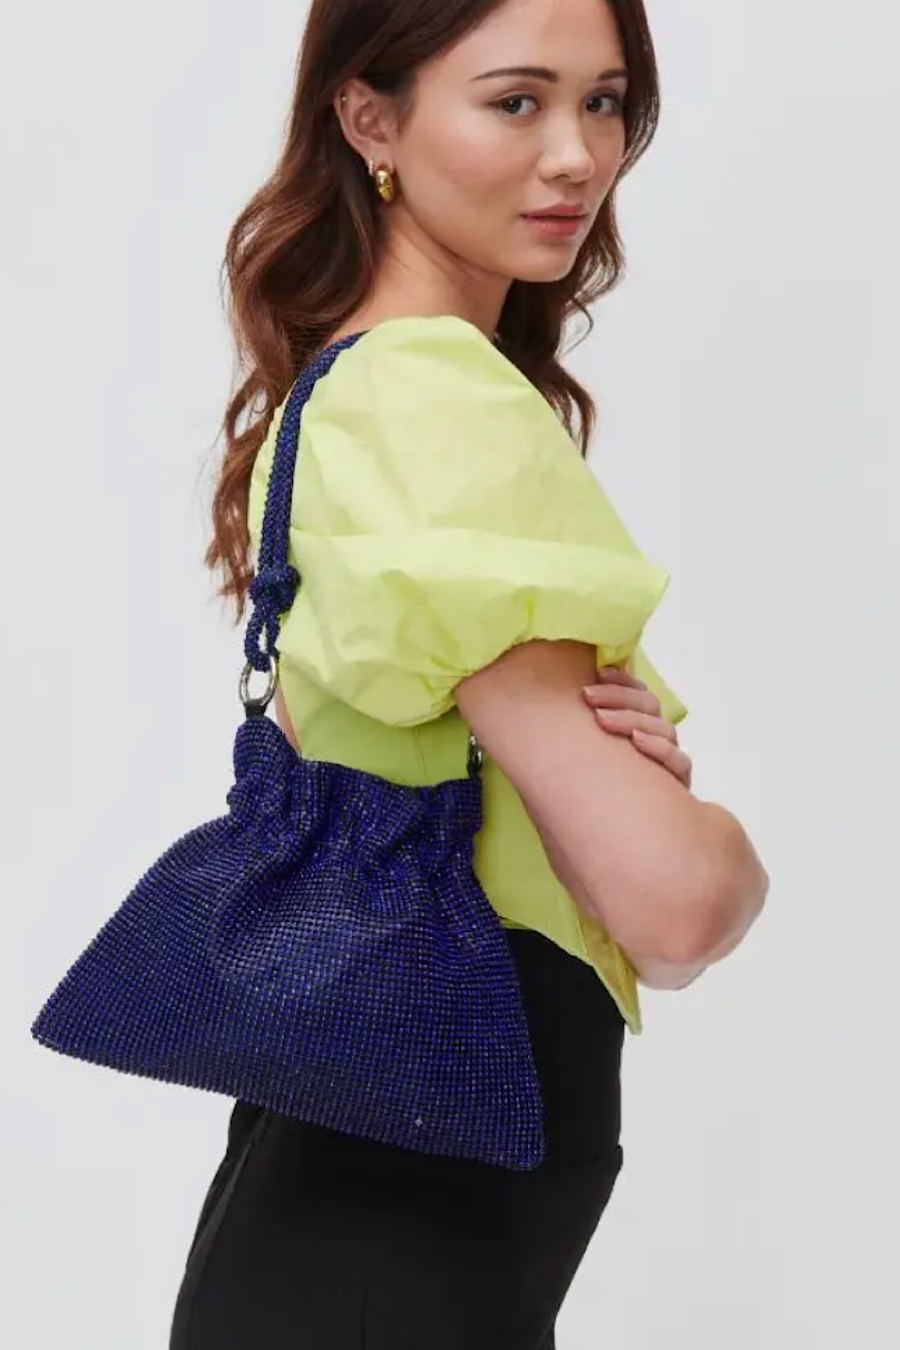 Larissa Sequin Evening Bag Blue